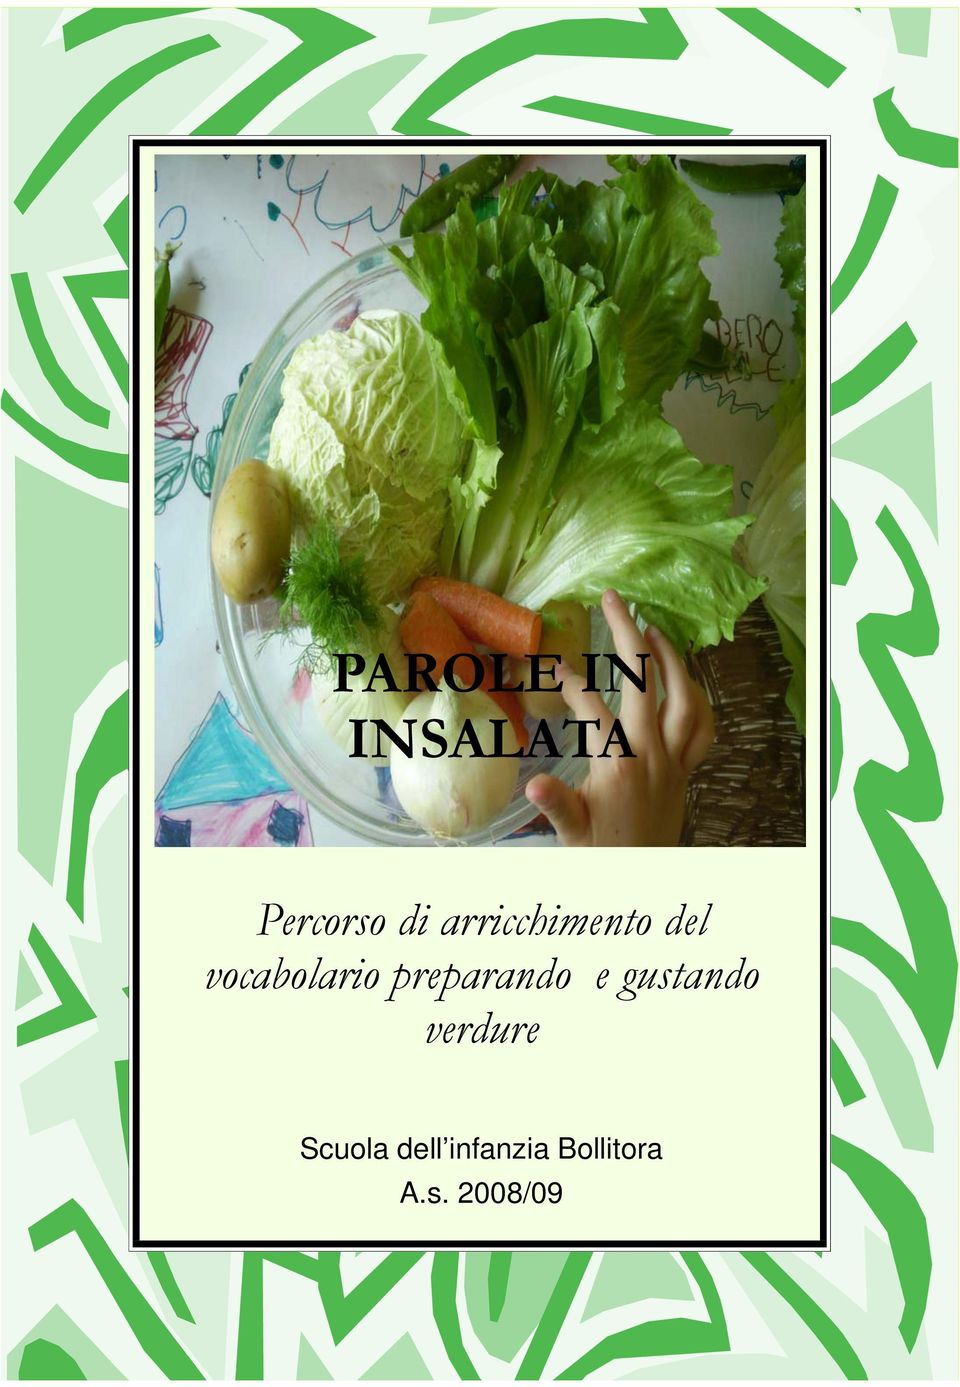 preparando e gustando verdure